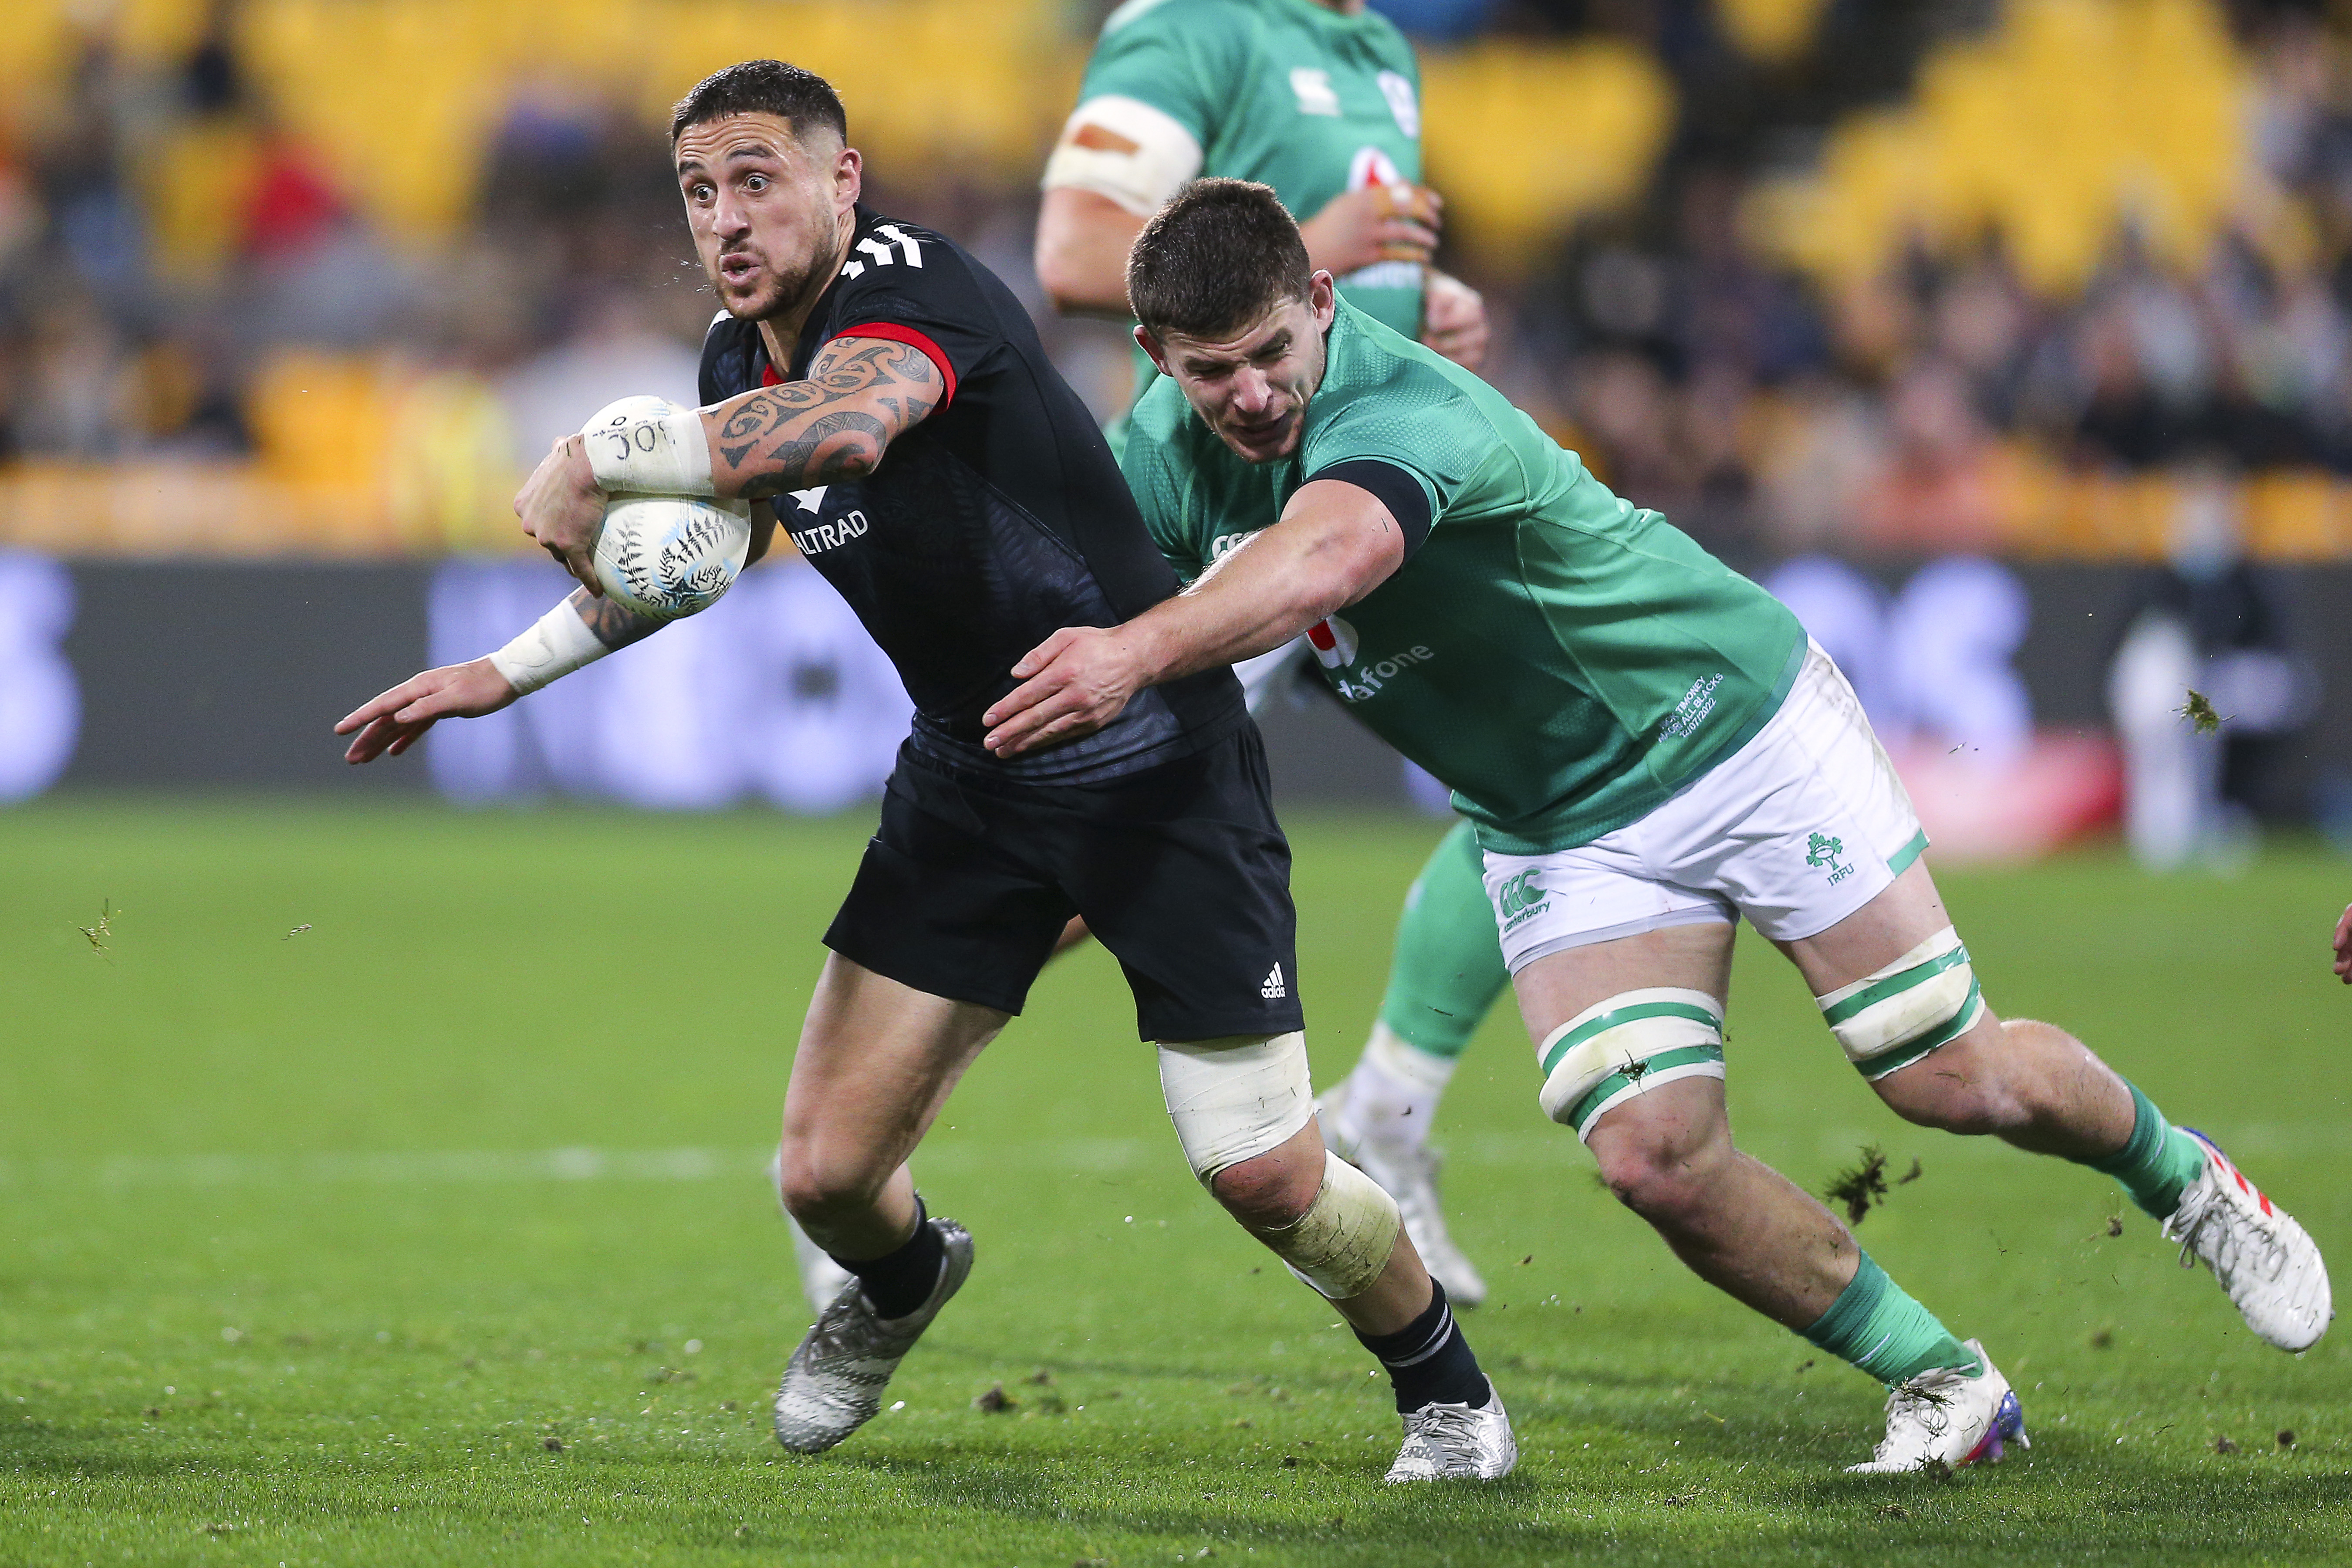 Ireland halve series with Māori All Blacks » allblacks